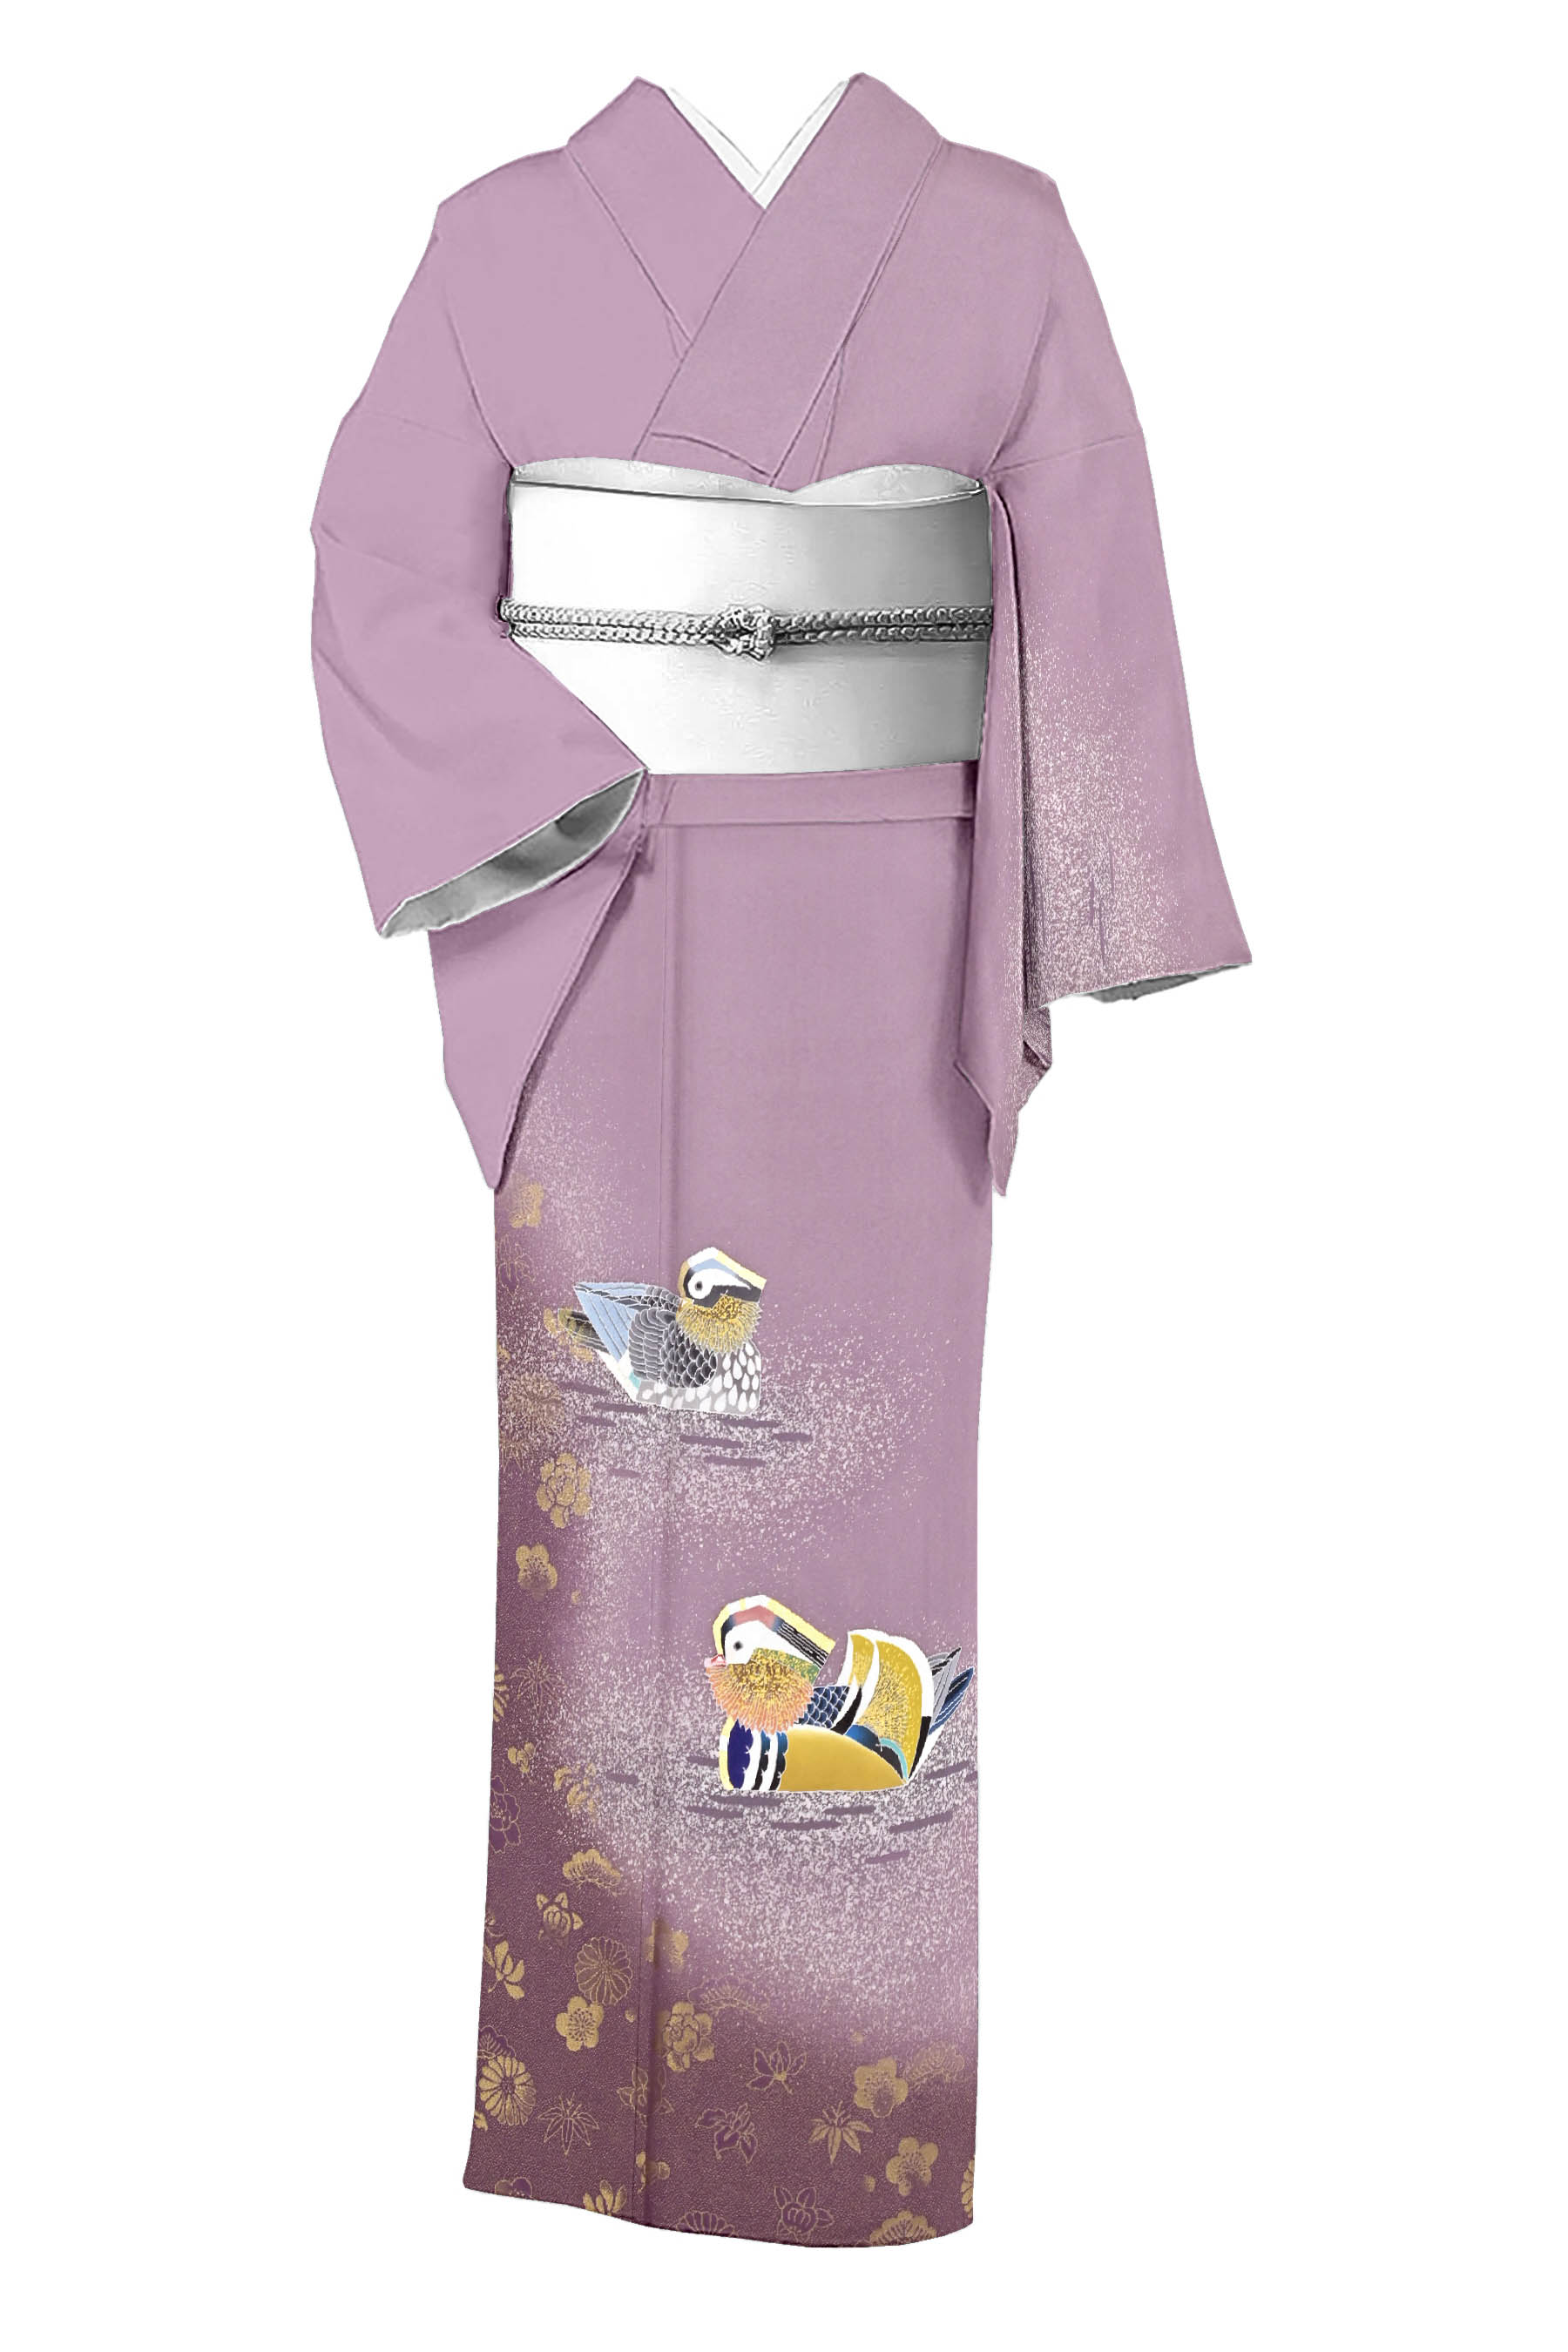 羽田登喜男の着物・帯の一覧|京都きもの市場【日本最大級の着物 